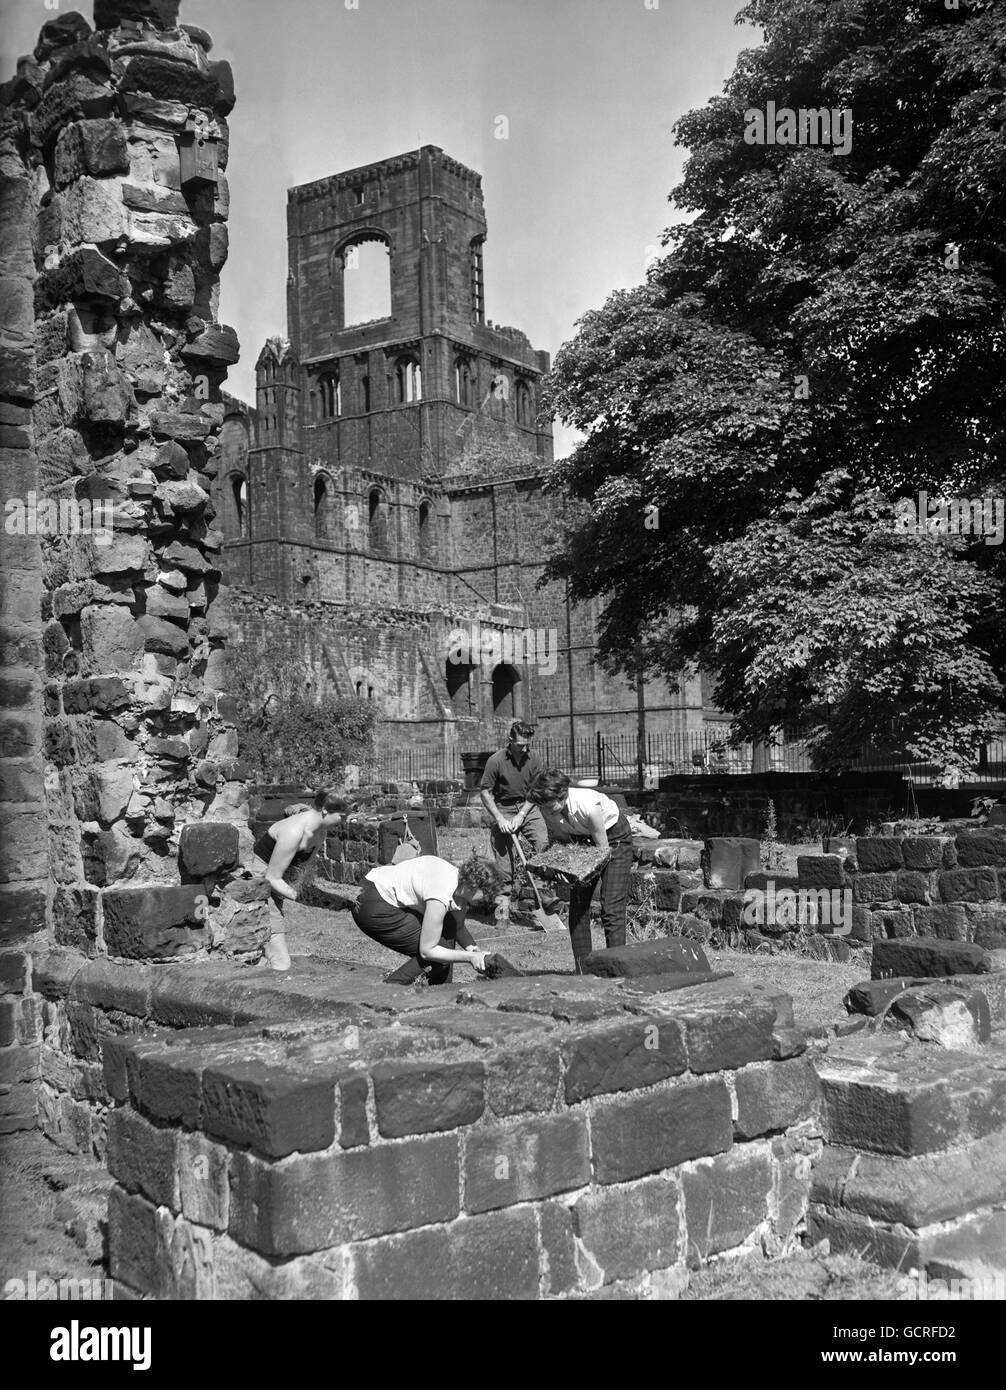 Uno scavo archeologico in corso tra le rovine dell'abbazia di Kirkstall, Leeds. L'Abbazia cistercense, costruita intorno al 1140, fu distrutta a seguito dello scioglimento dei monasteri nel XVI secolo, con gran parte della sua pietra utilizzata per la costruzione di edifici locali durante quel periodo e successivi. Foto Stock